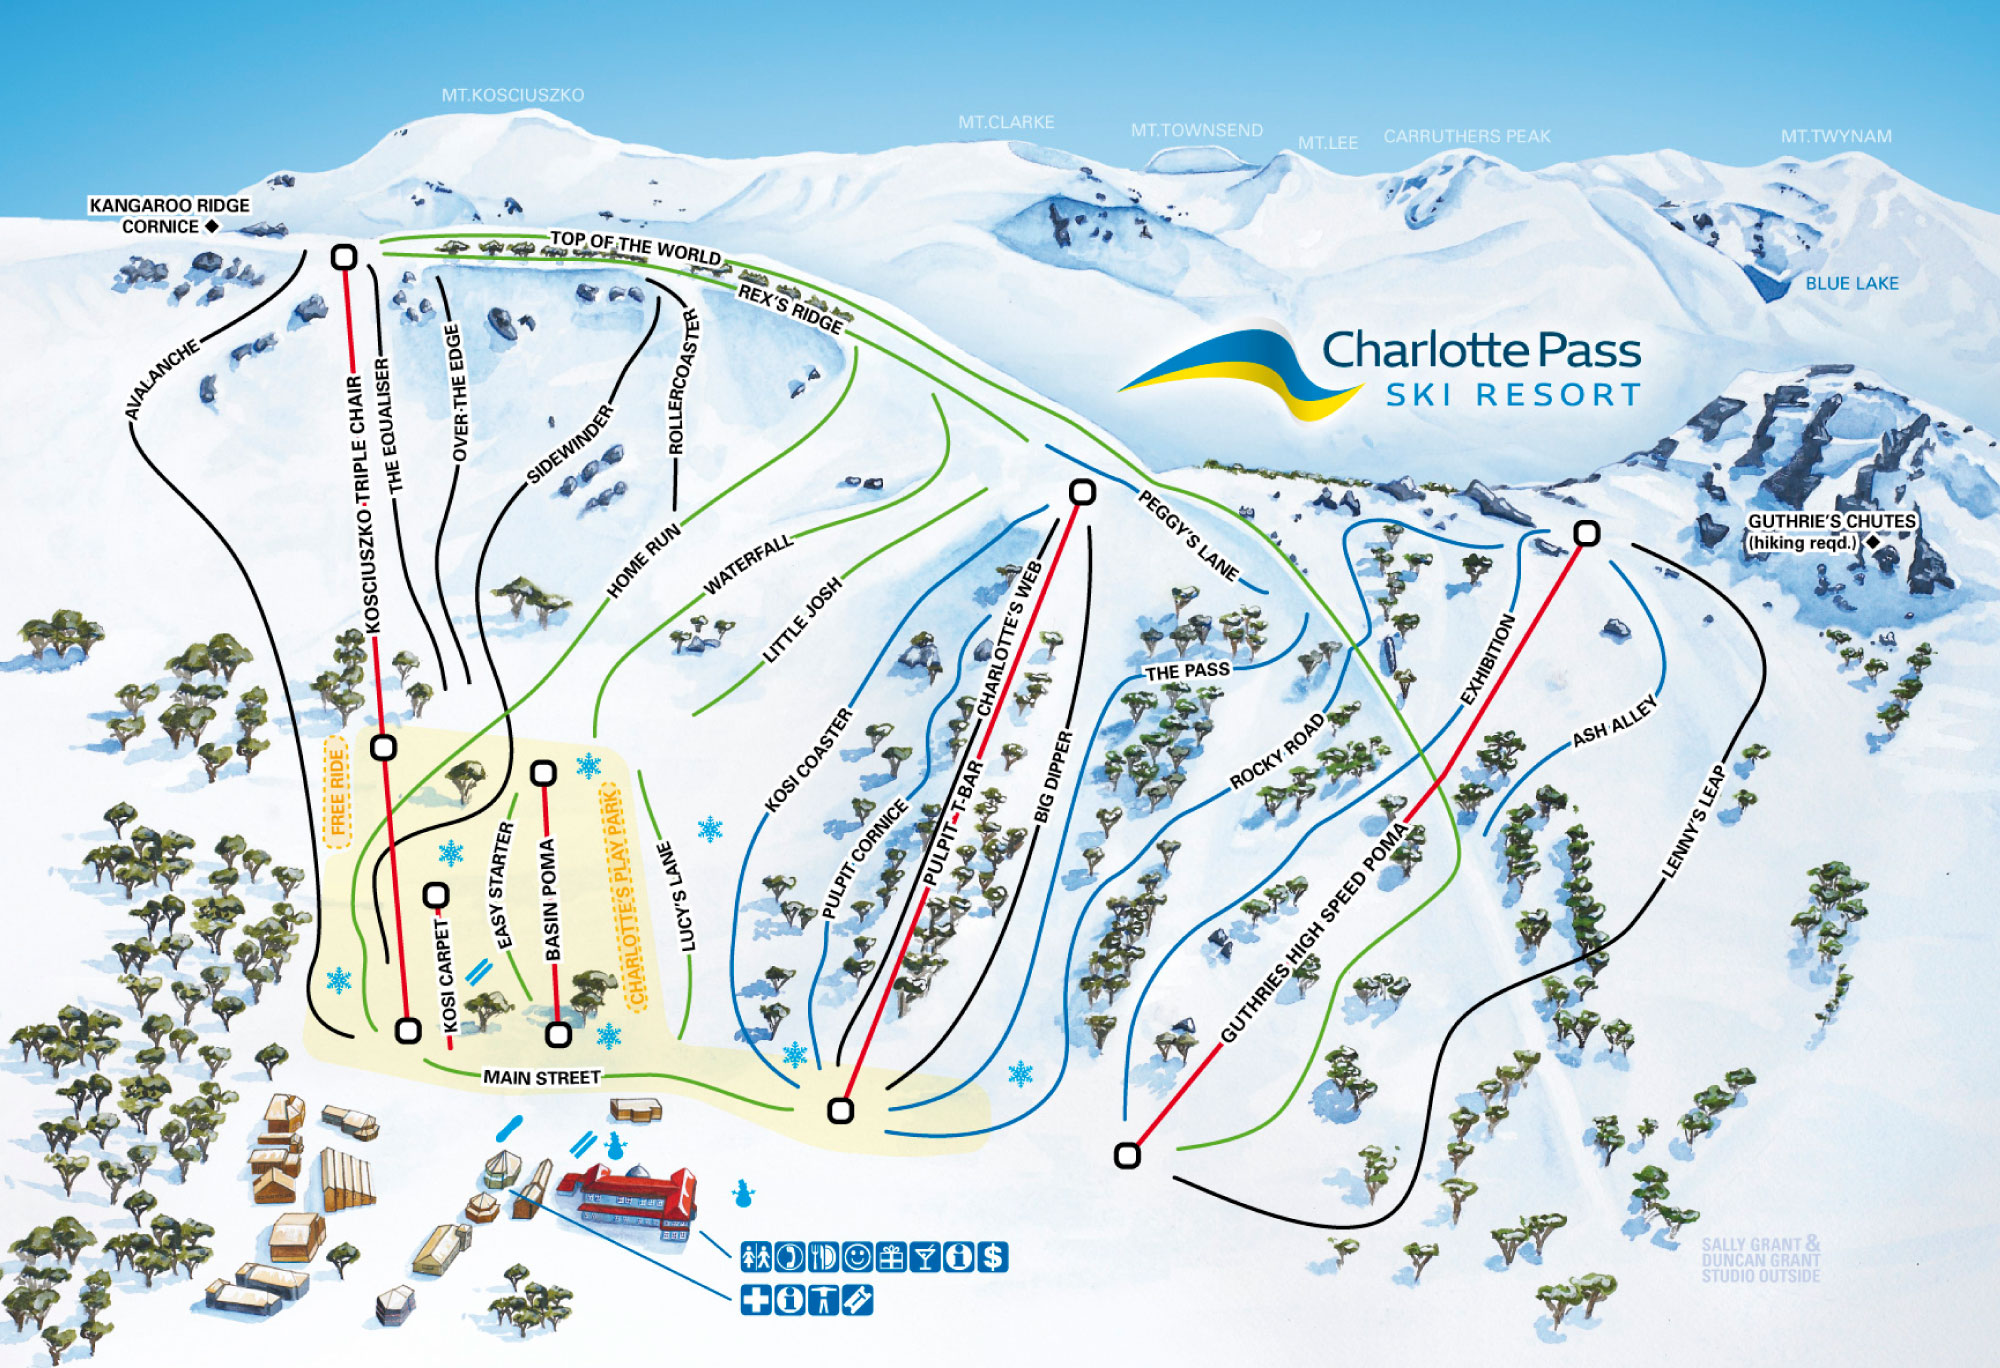 Charlotte Pass Ski Resort Trail Map illustration